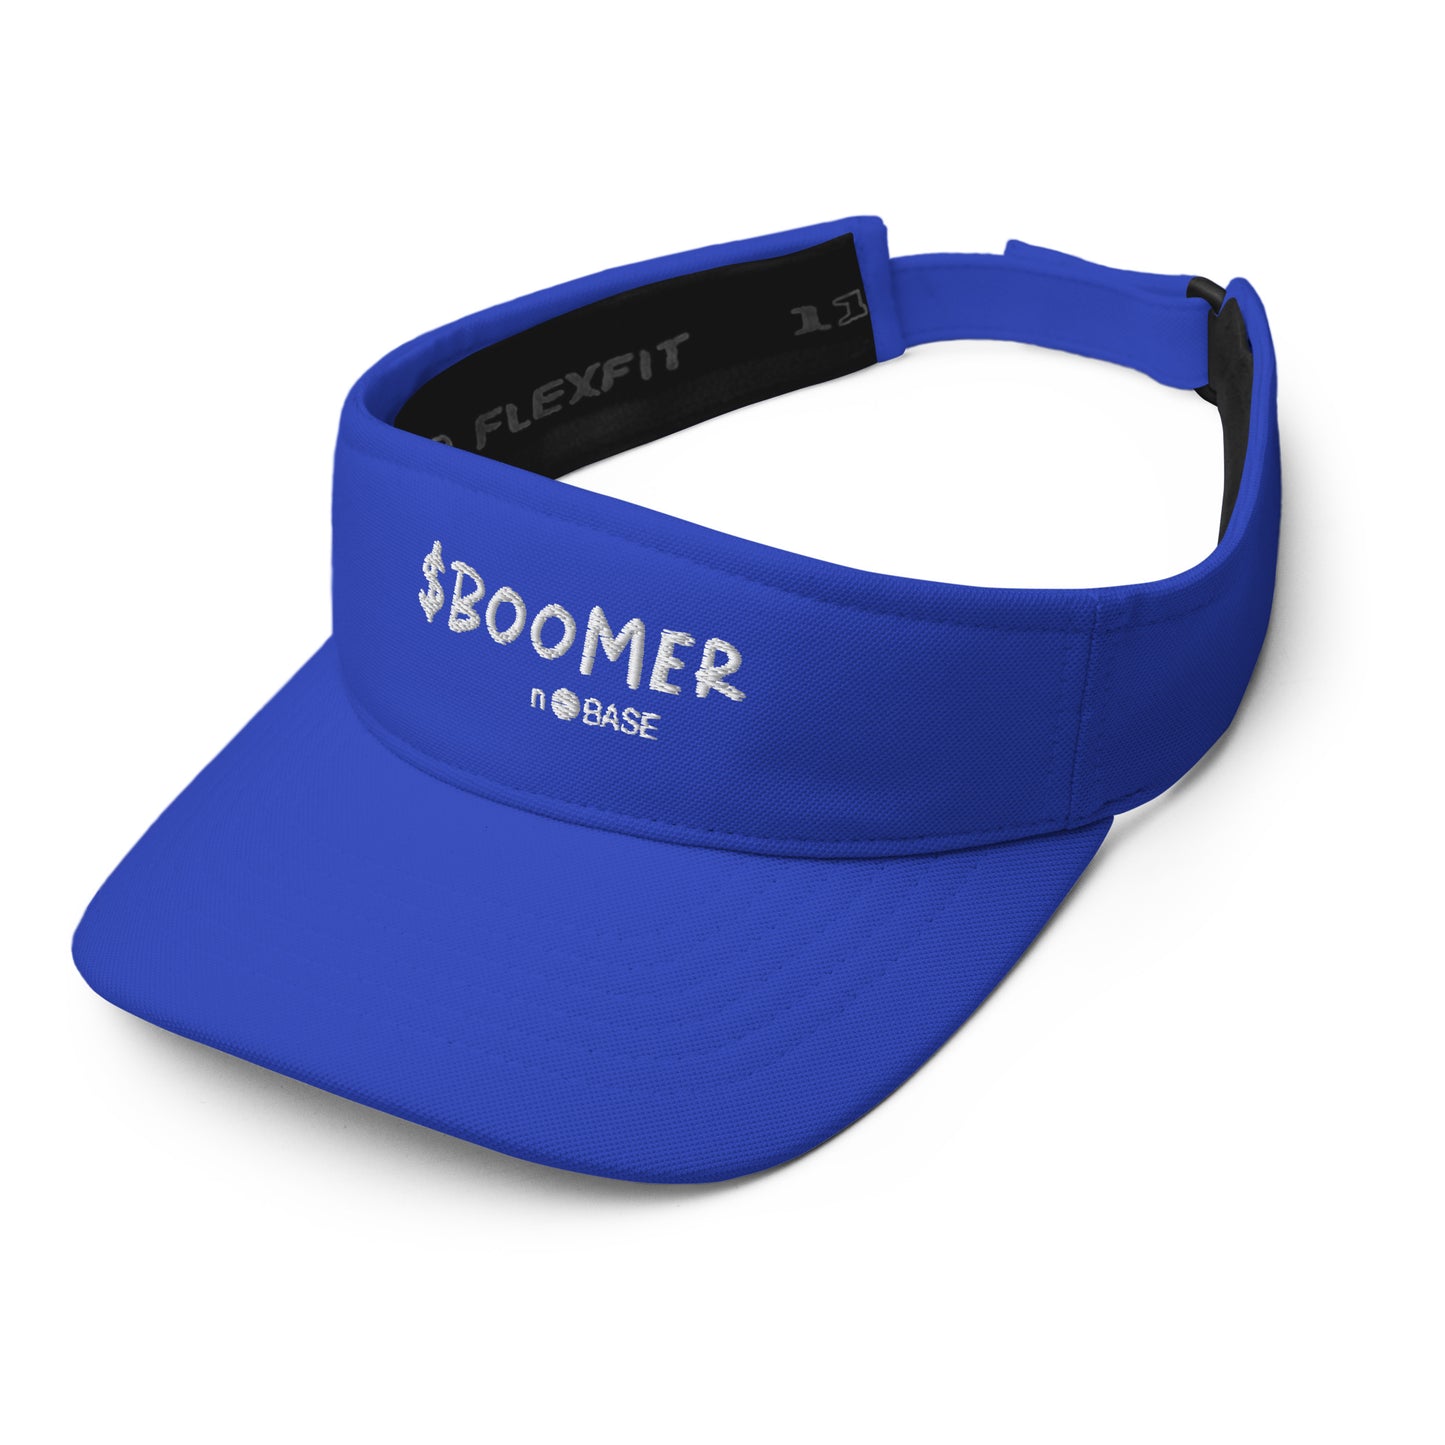 $BOOMER Visor (Base Blue)